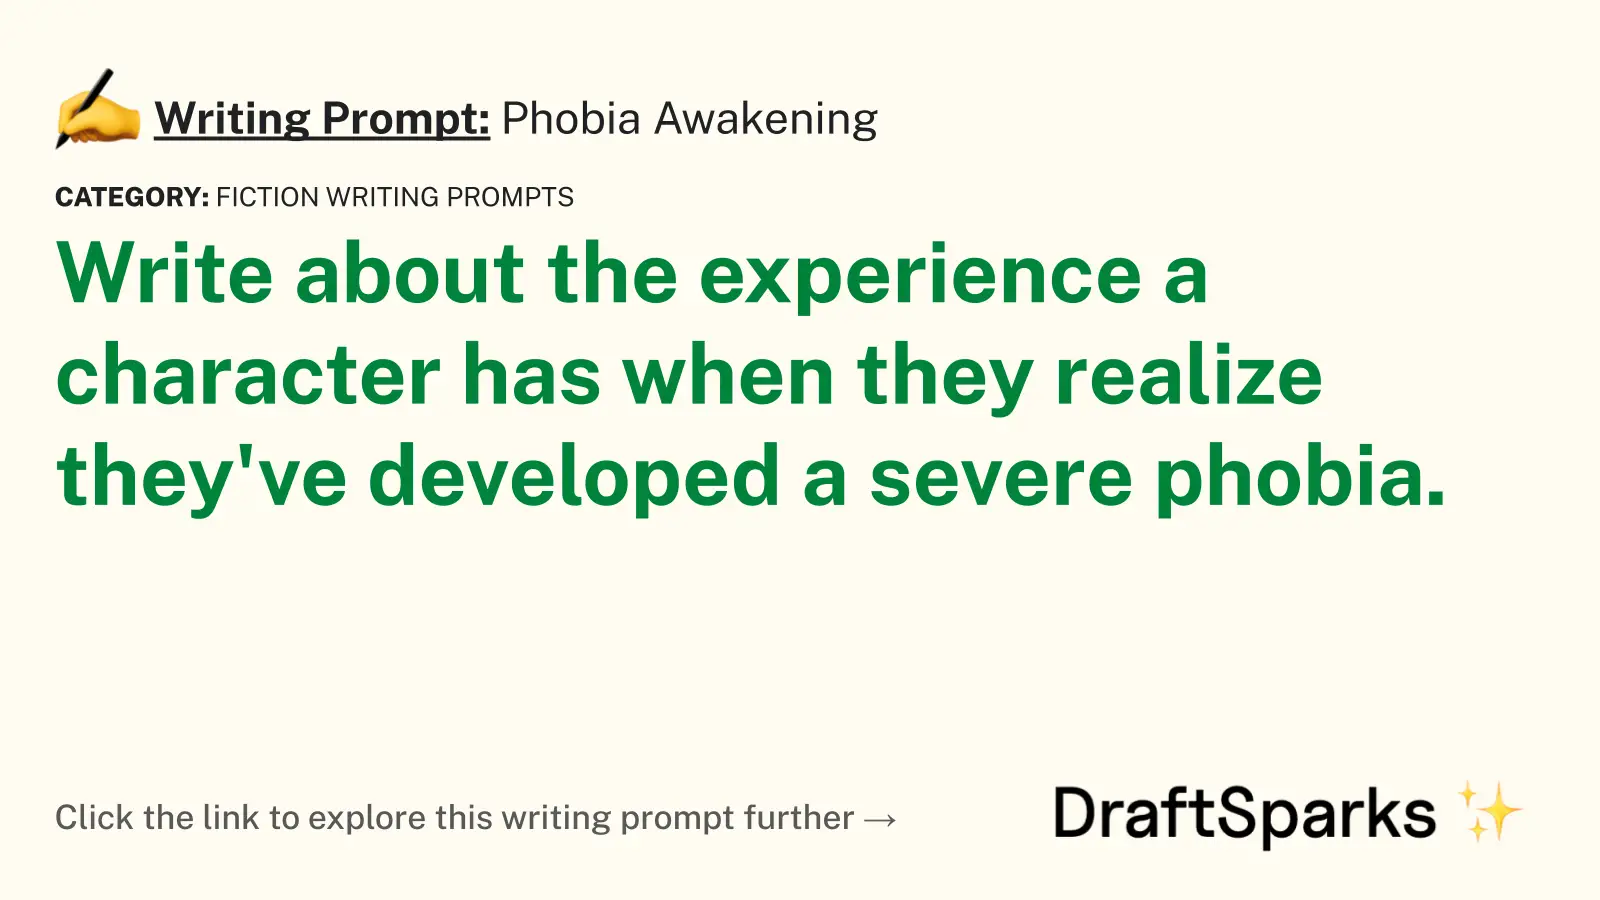 Phobia Awakening